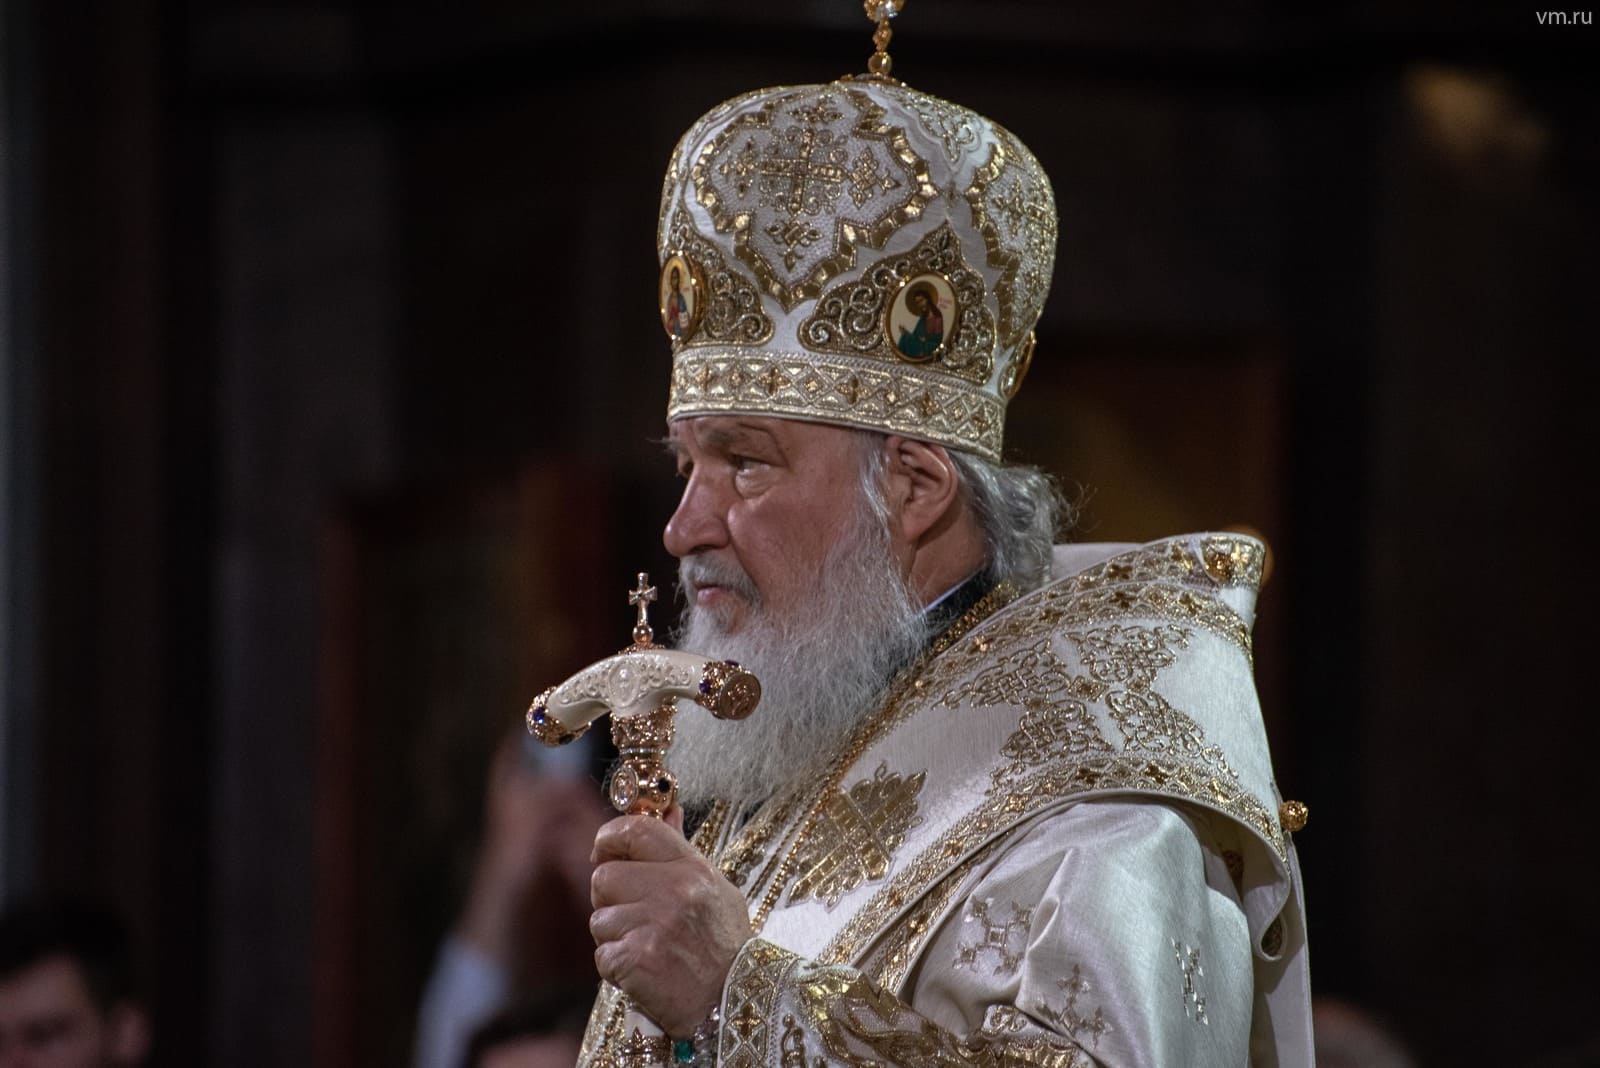 Патриарх Кирилл считает, что тему абортов надо закрыть